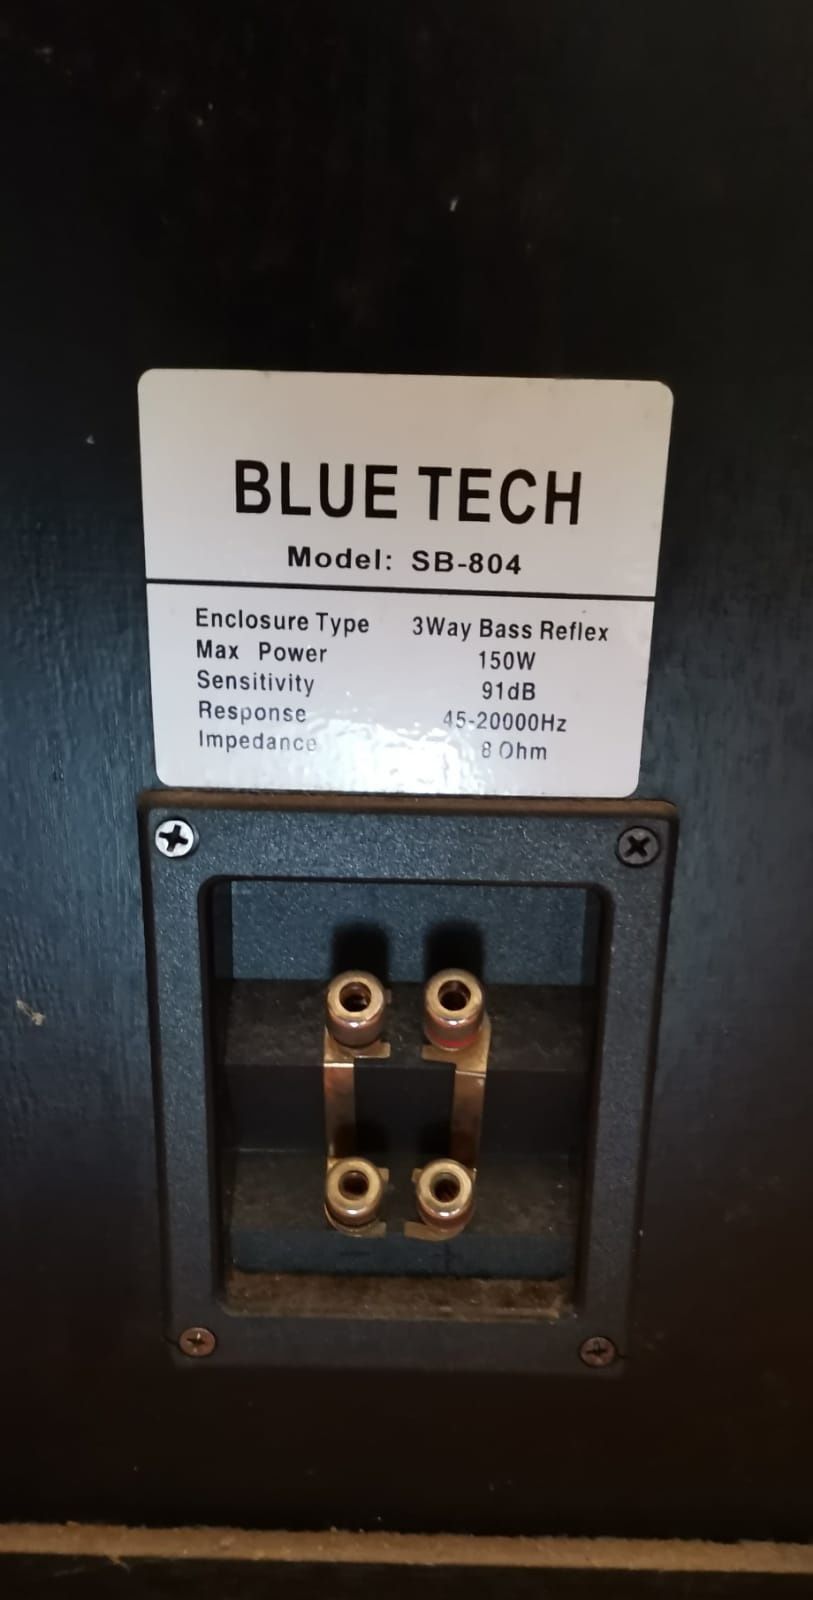 Pereche boxe pasive Bluetech SB-804, cu 3 căi, bas reflex.
Cutii din l